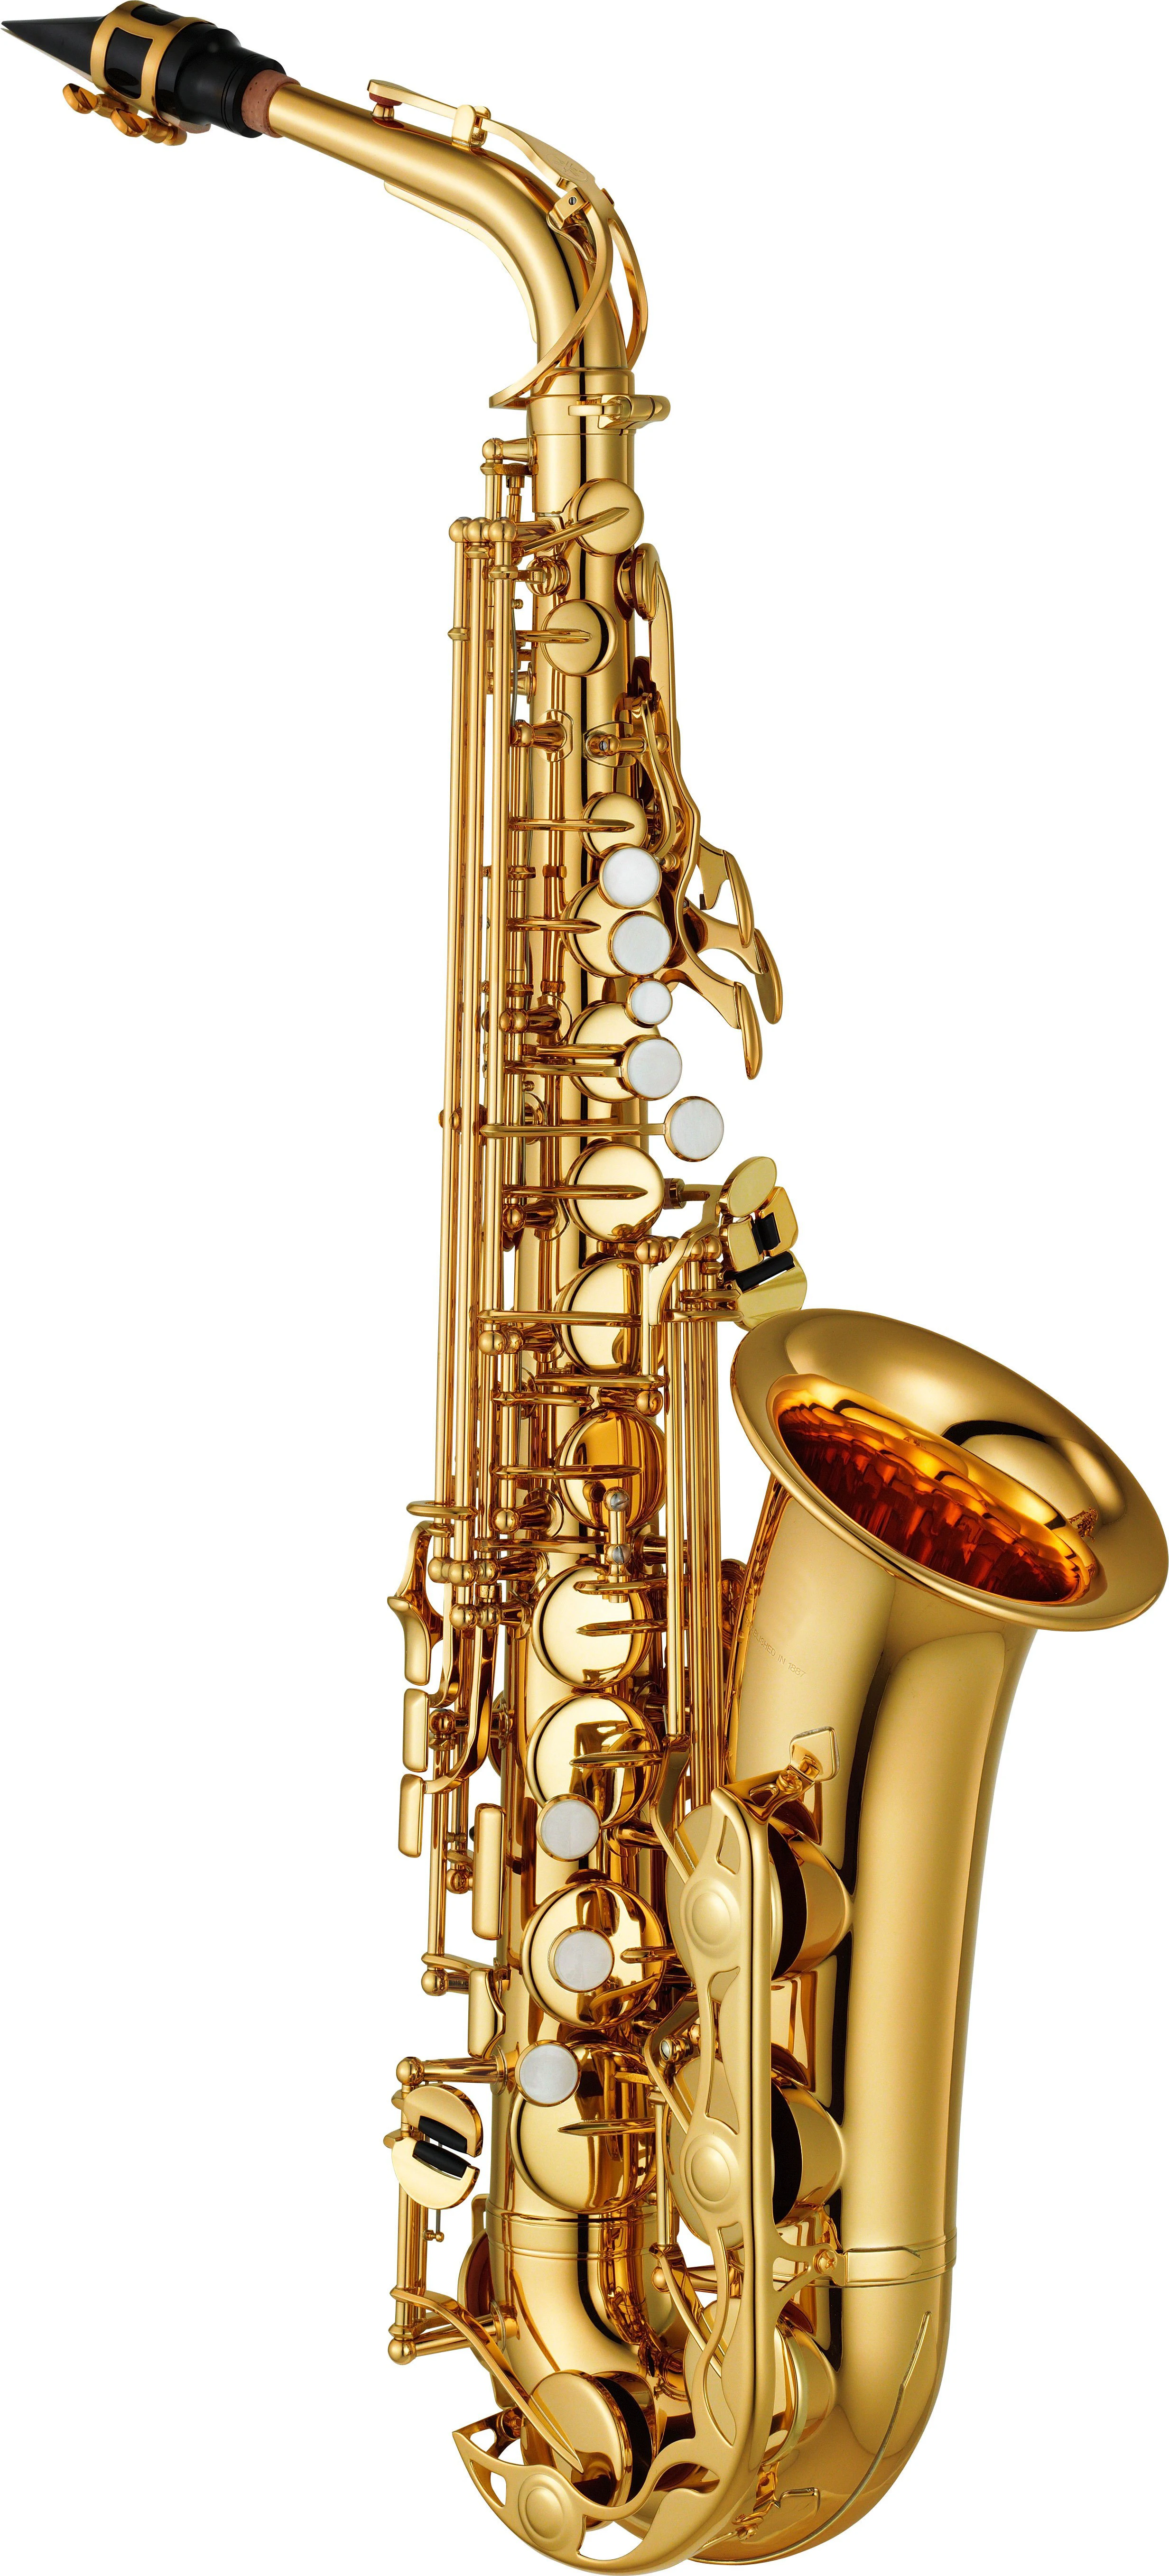 Новый японский альт-саксофон 380 Профессиональный альт-саксофон пользовательская серия высокий саксофон золотой лак с мундштуком тростники...